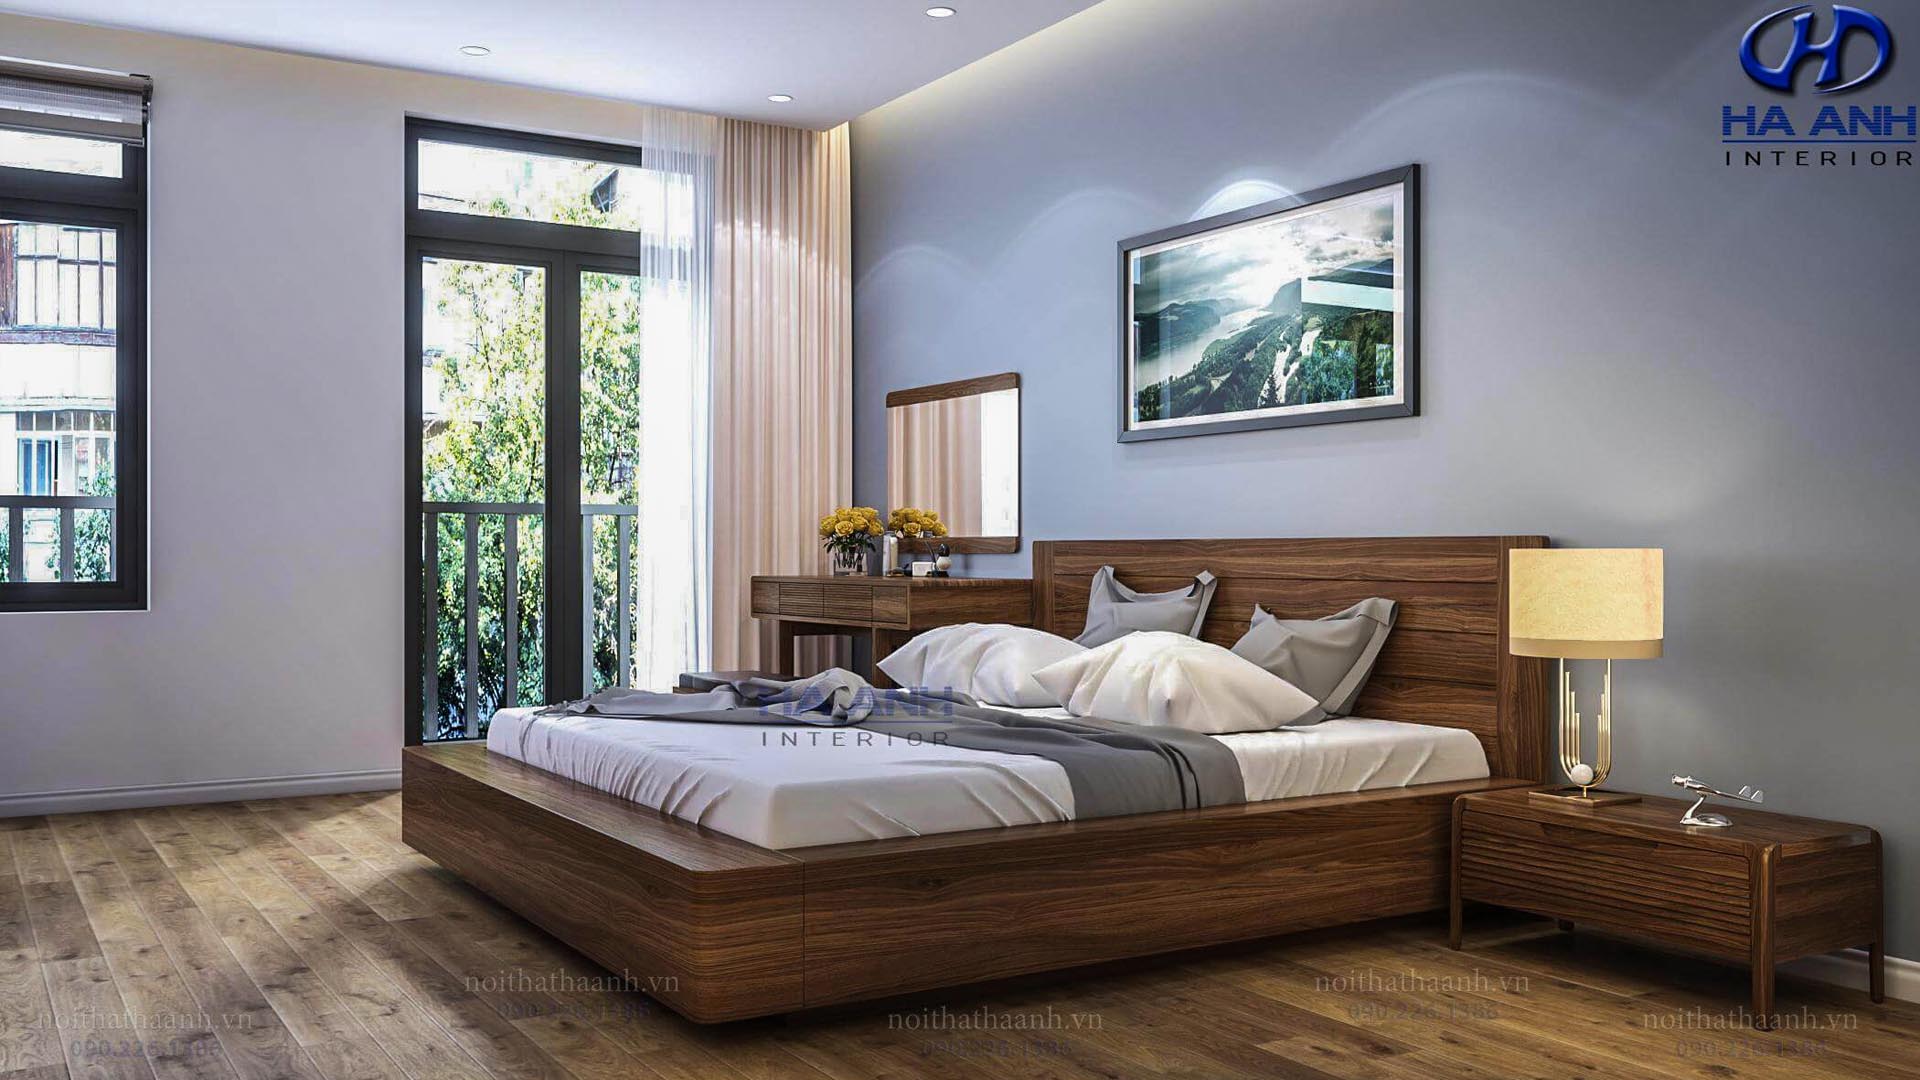 Những lý do khiến giường ngủ gỗ óc chó Hà Anh được nhiều người yêu thích